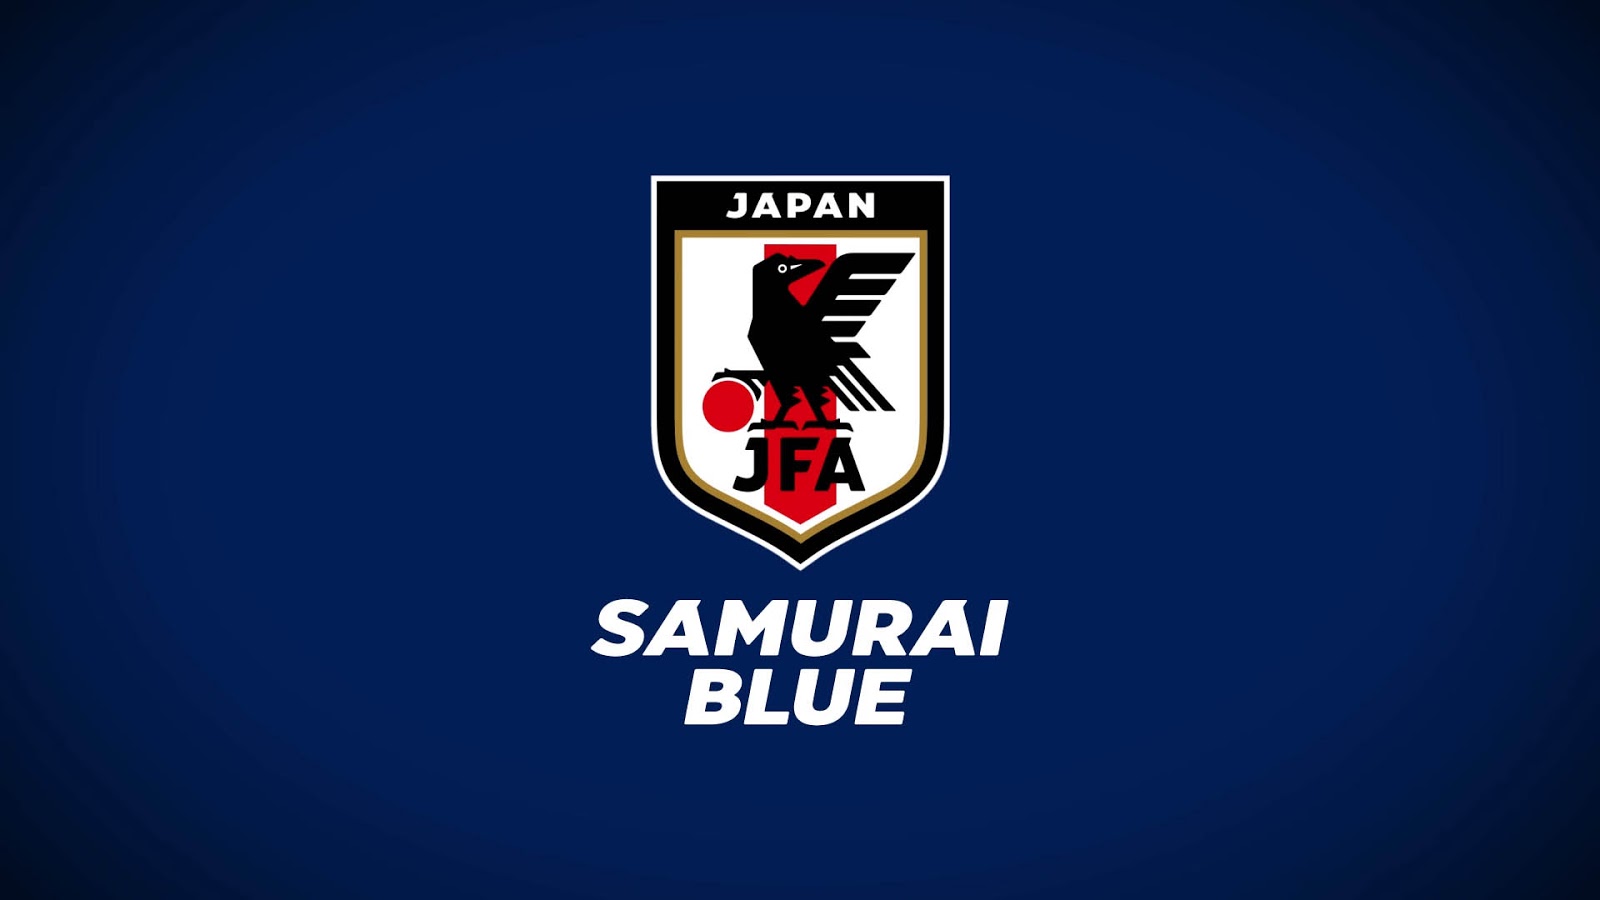 jfa发布日本国家队全新队徽